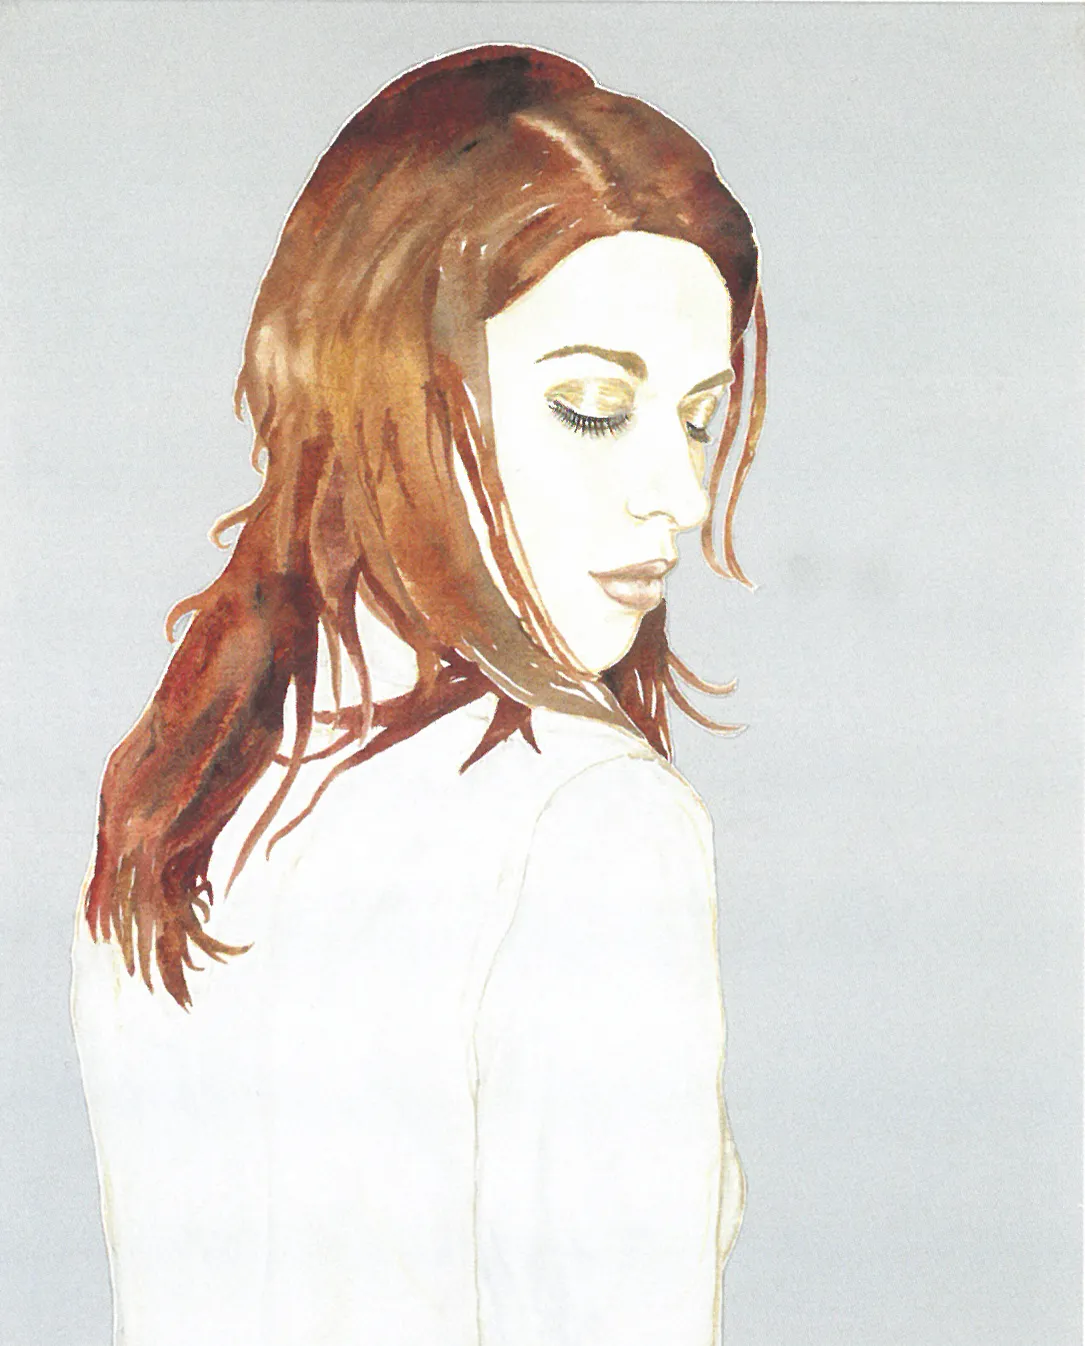 Abetz & Drescher — Atmosphères, 2000, 100 x 80 cm, acrylic on canvas